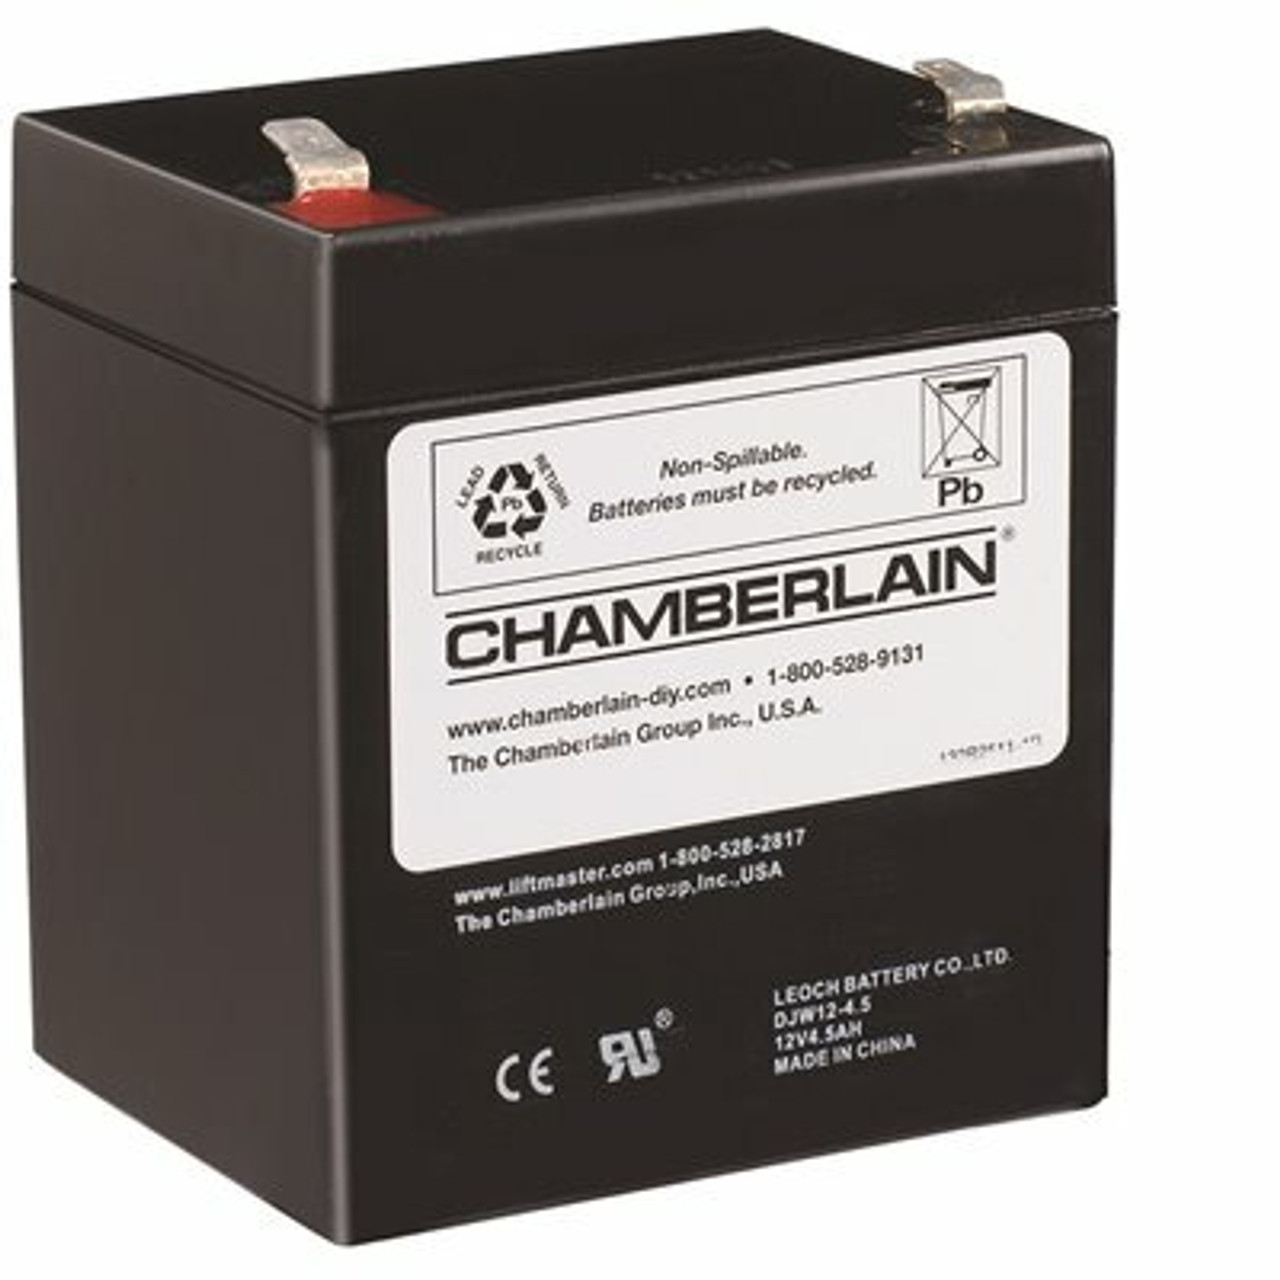 Chamberlain Garage Door Opener Battery Replacement